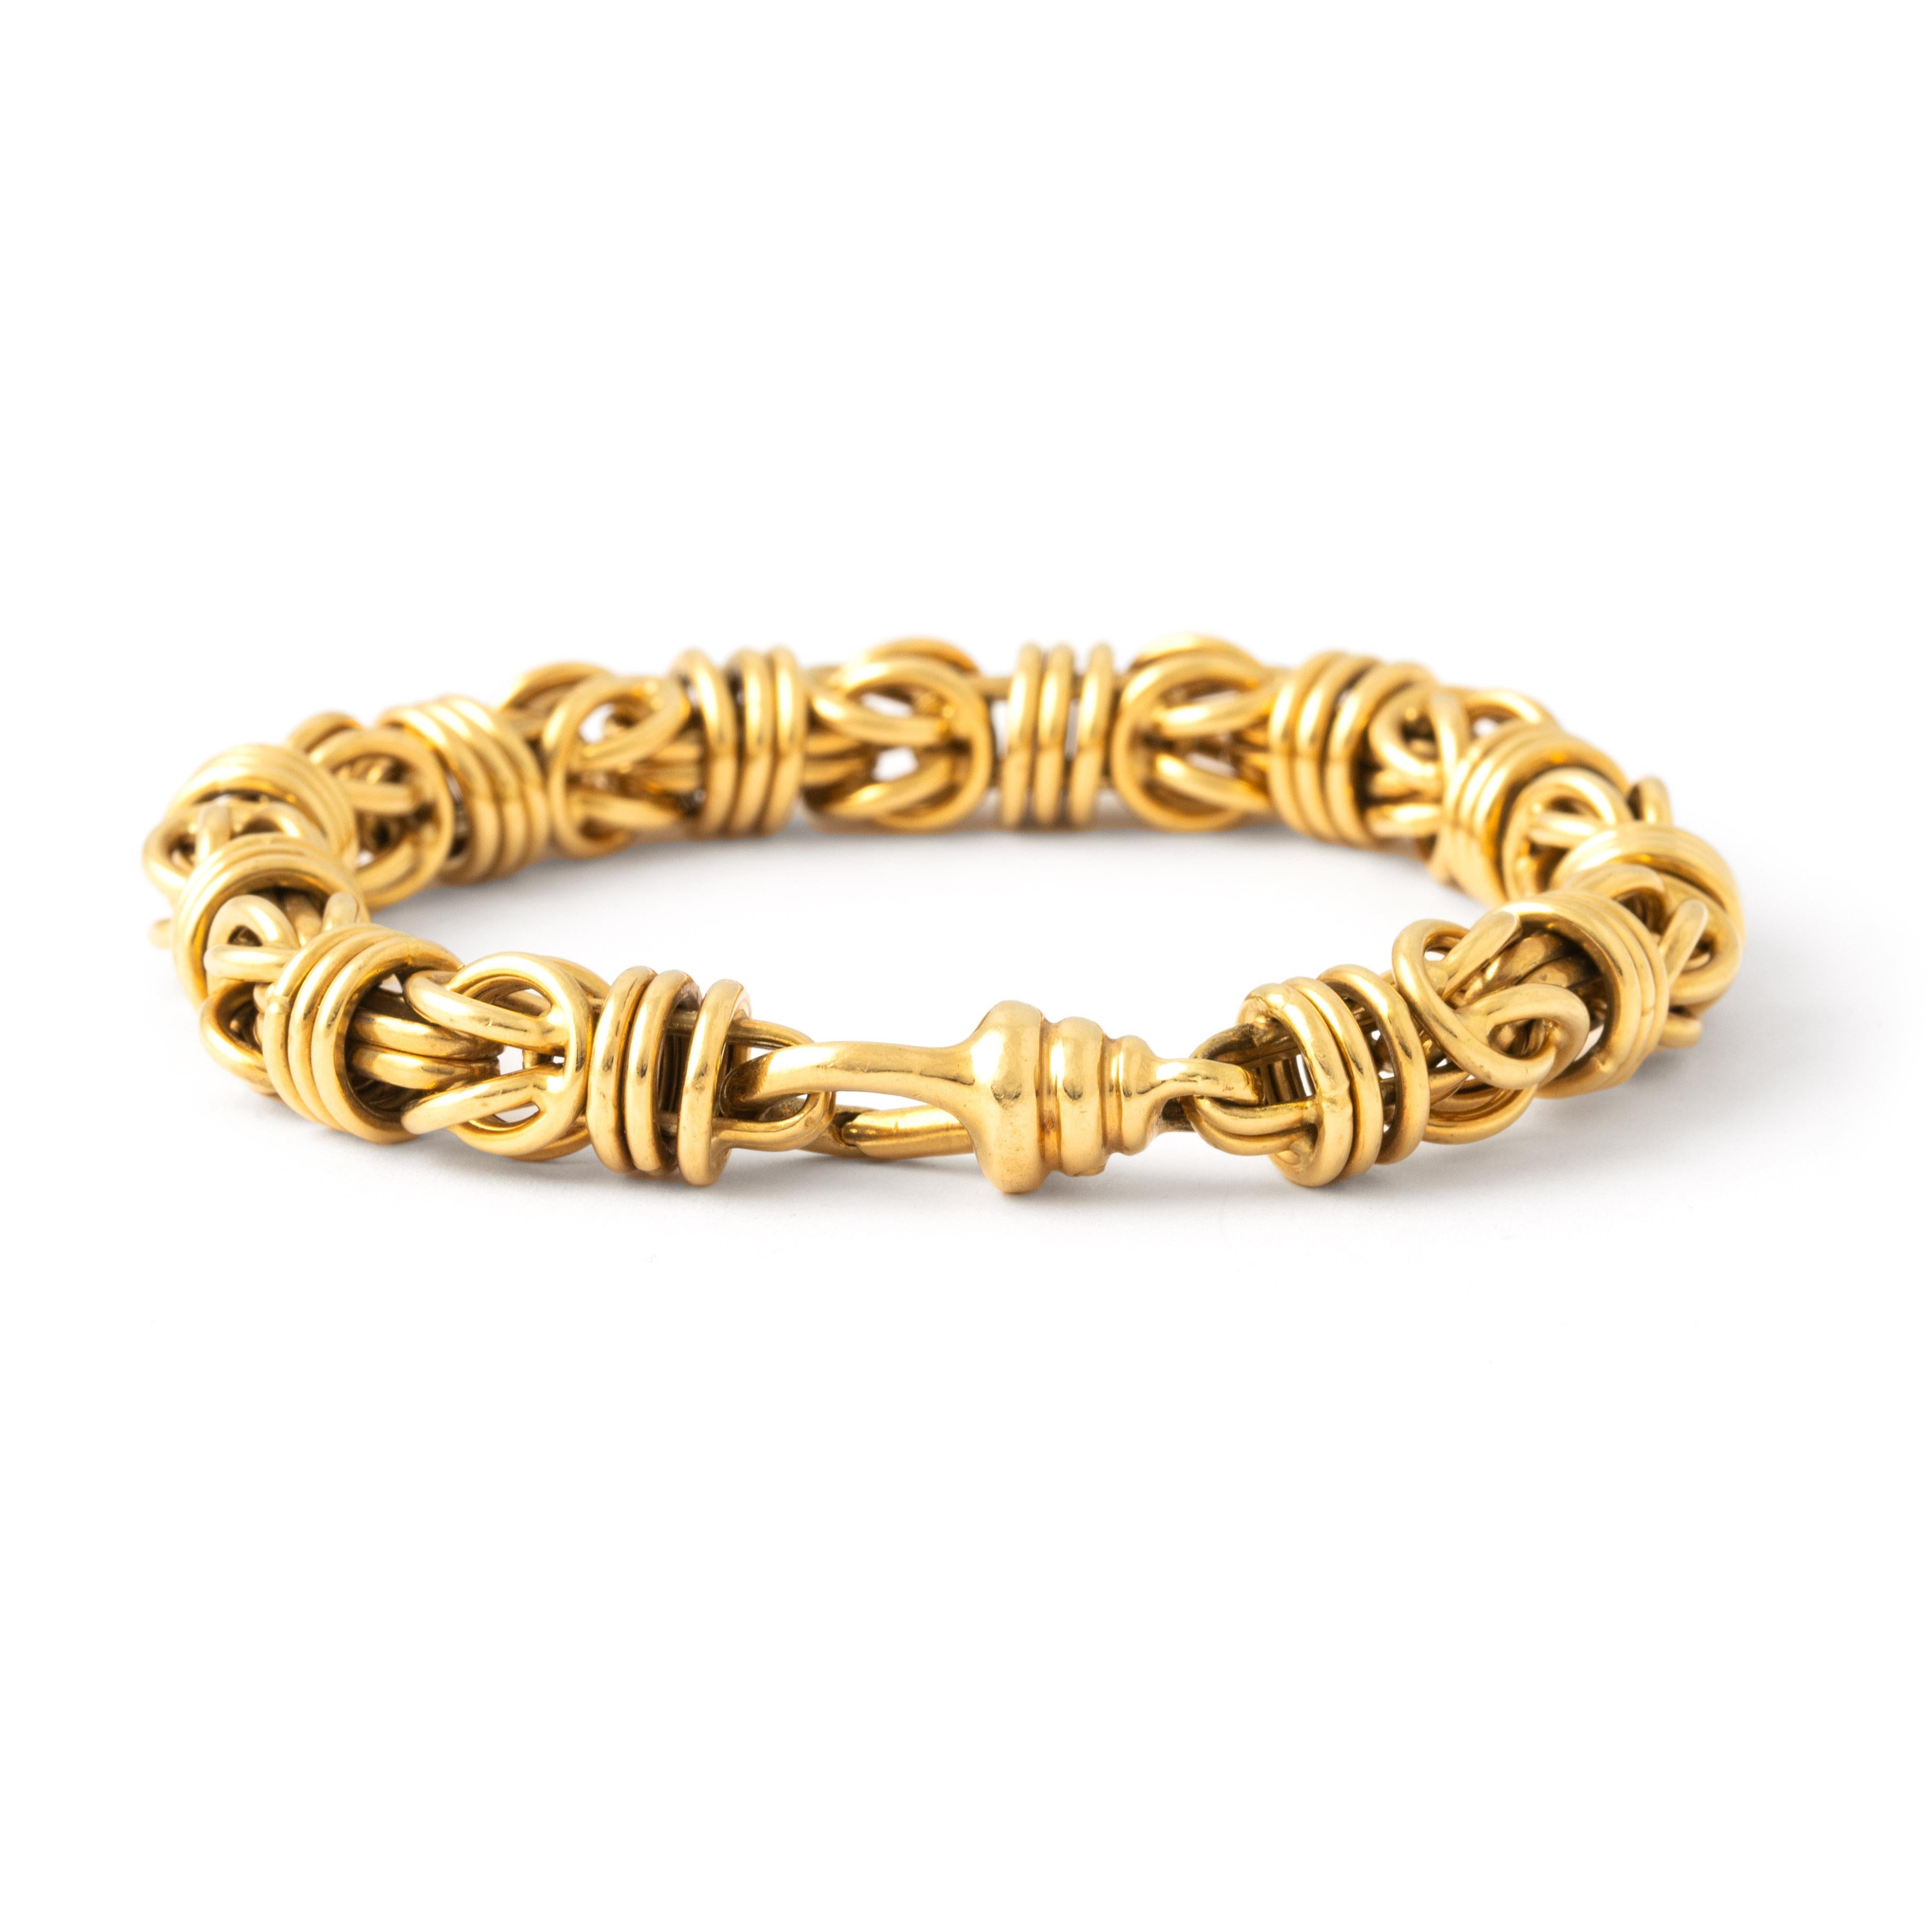 Bracelet Vintage en chaîne d'or jaune.
Entrez dans l'allure du passé avec ce bracelet à chaîne en or jaune vintage, une pièce qui exsude à la fois le charme et la sophistication. Fabriqué avec une attention méticuleuse aux détails, ce bracelet